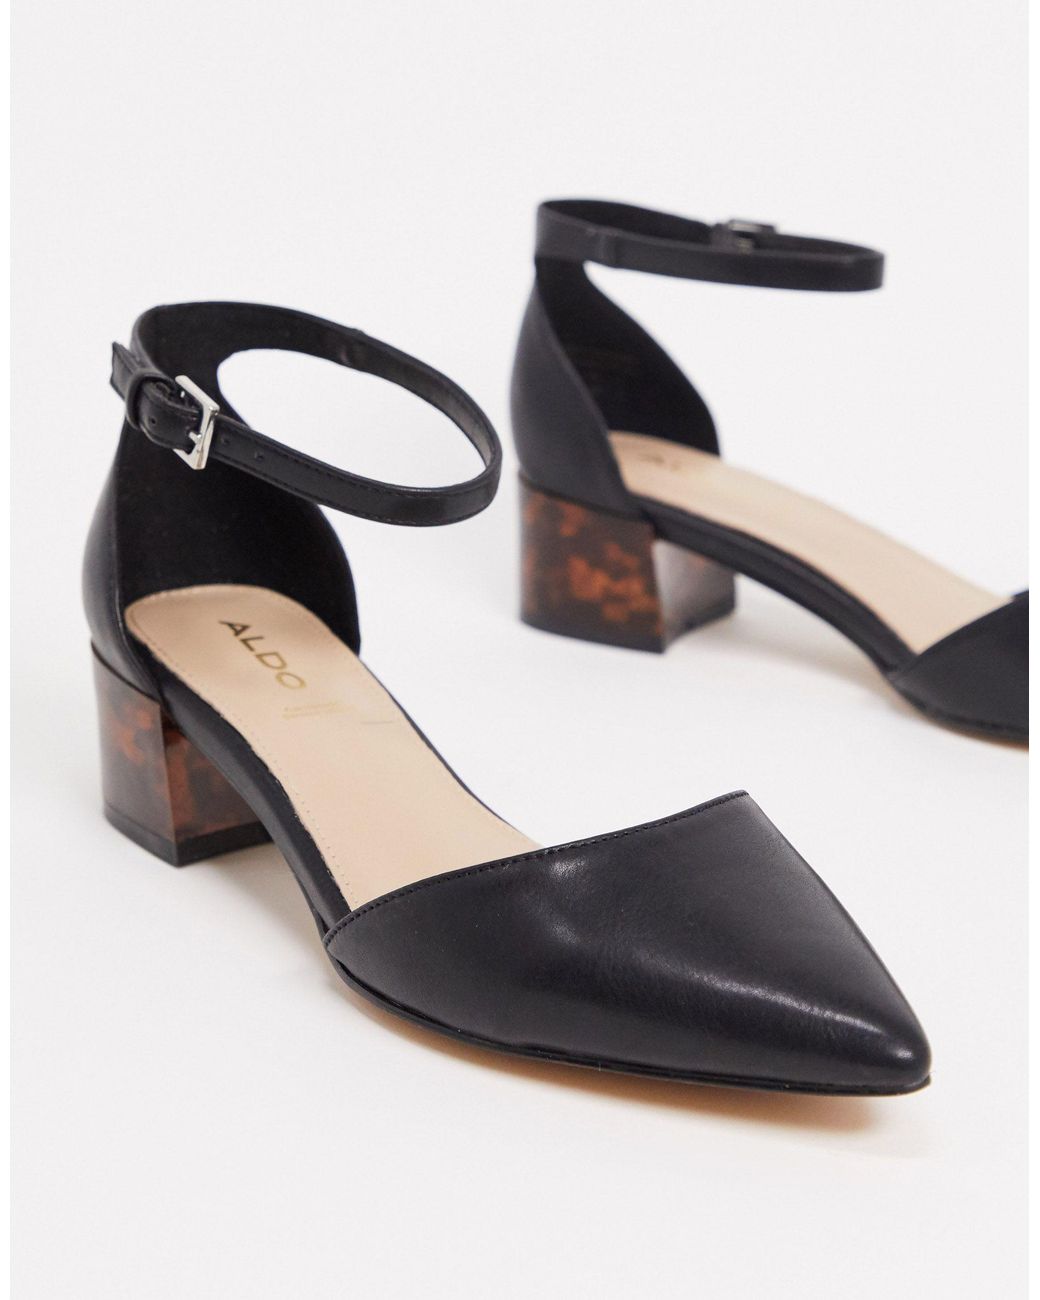 ALDO Zulian Mid Block Shoe in Black | Lyst Australia